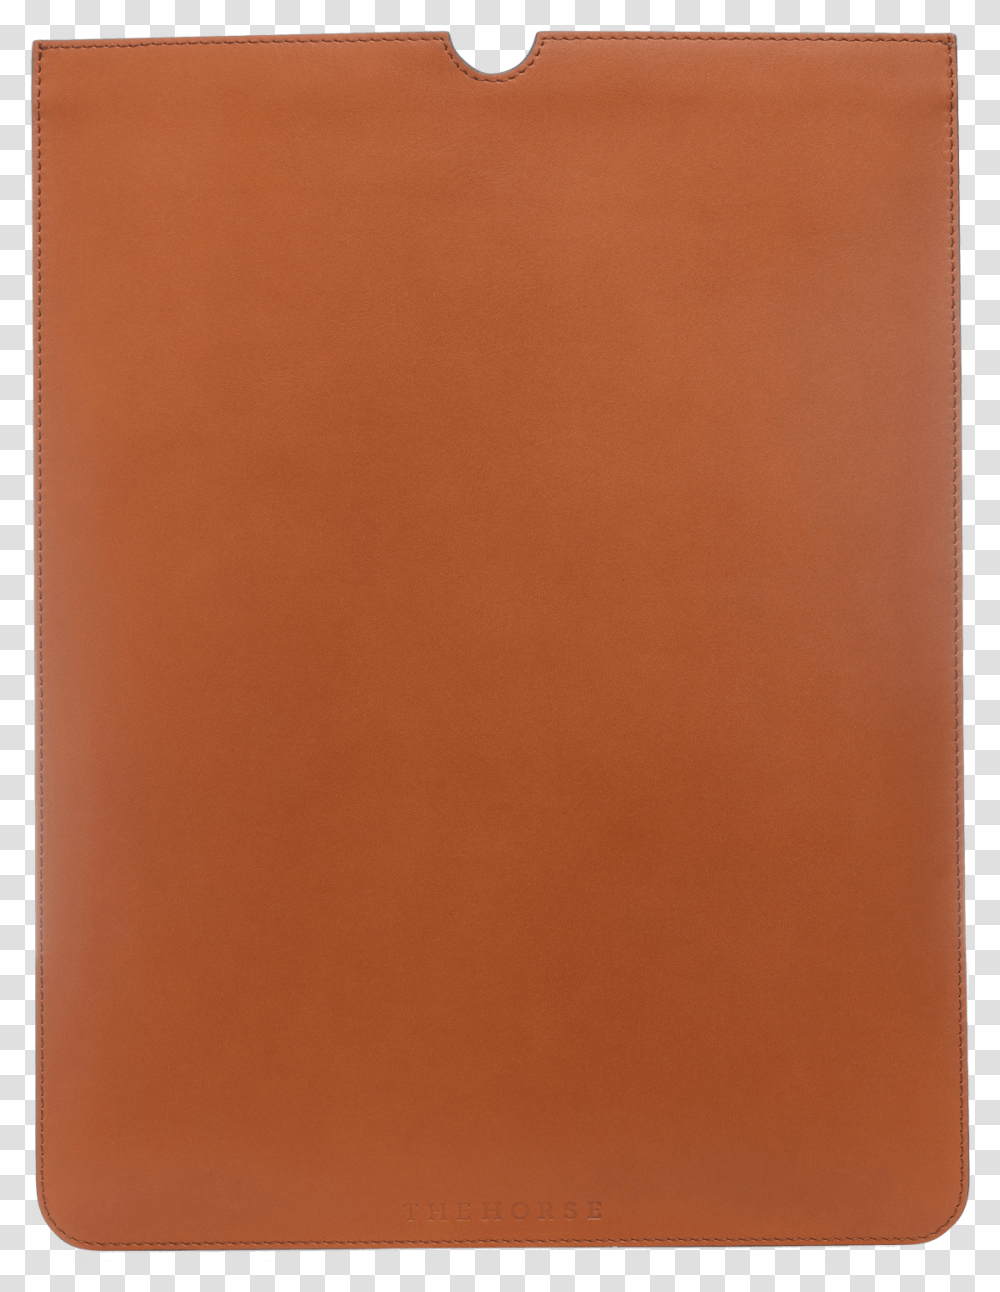 Leather, File Binder, File Folder, Rug Transparent Png